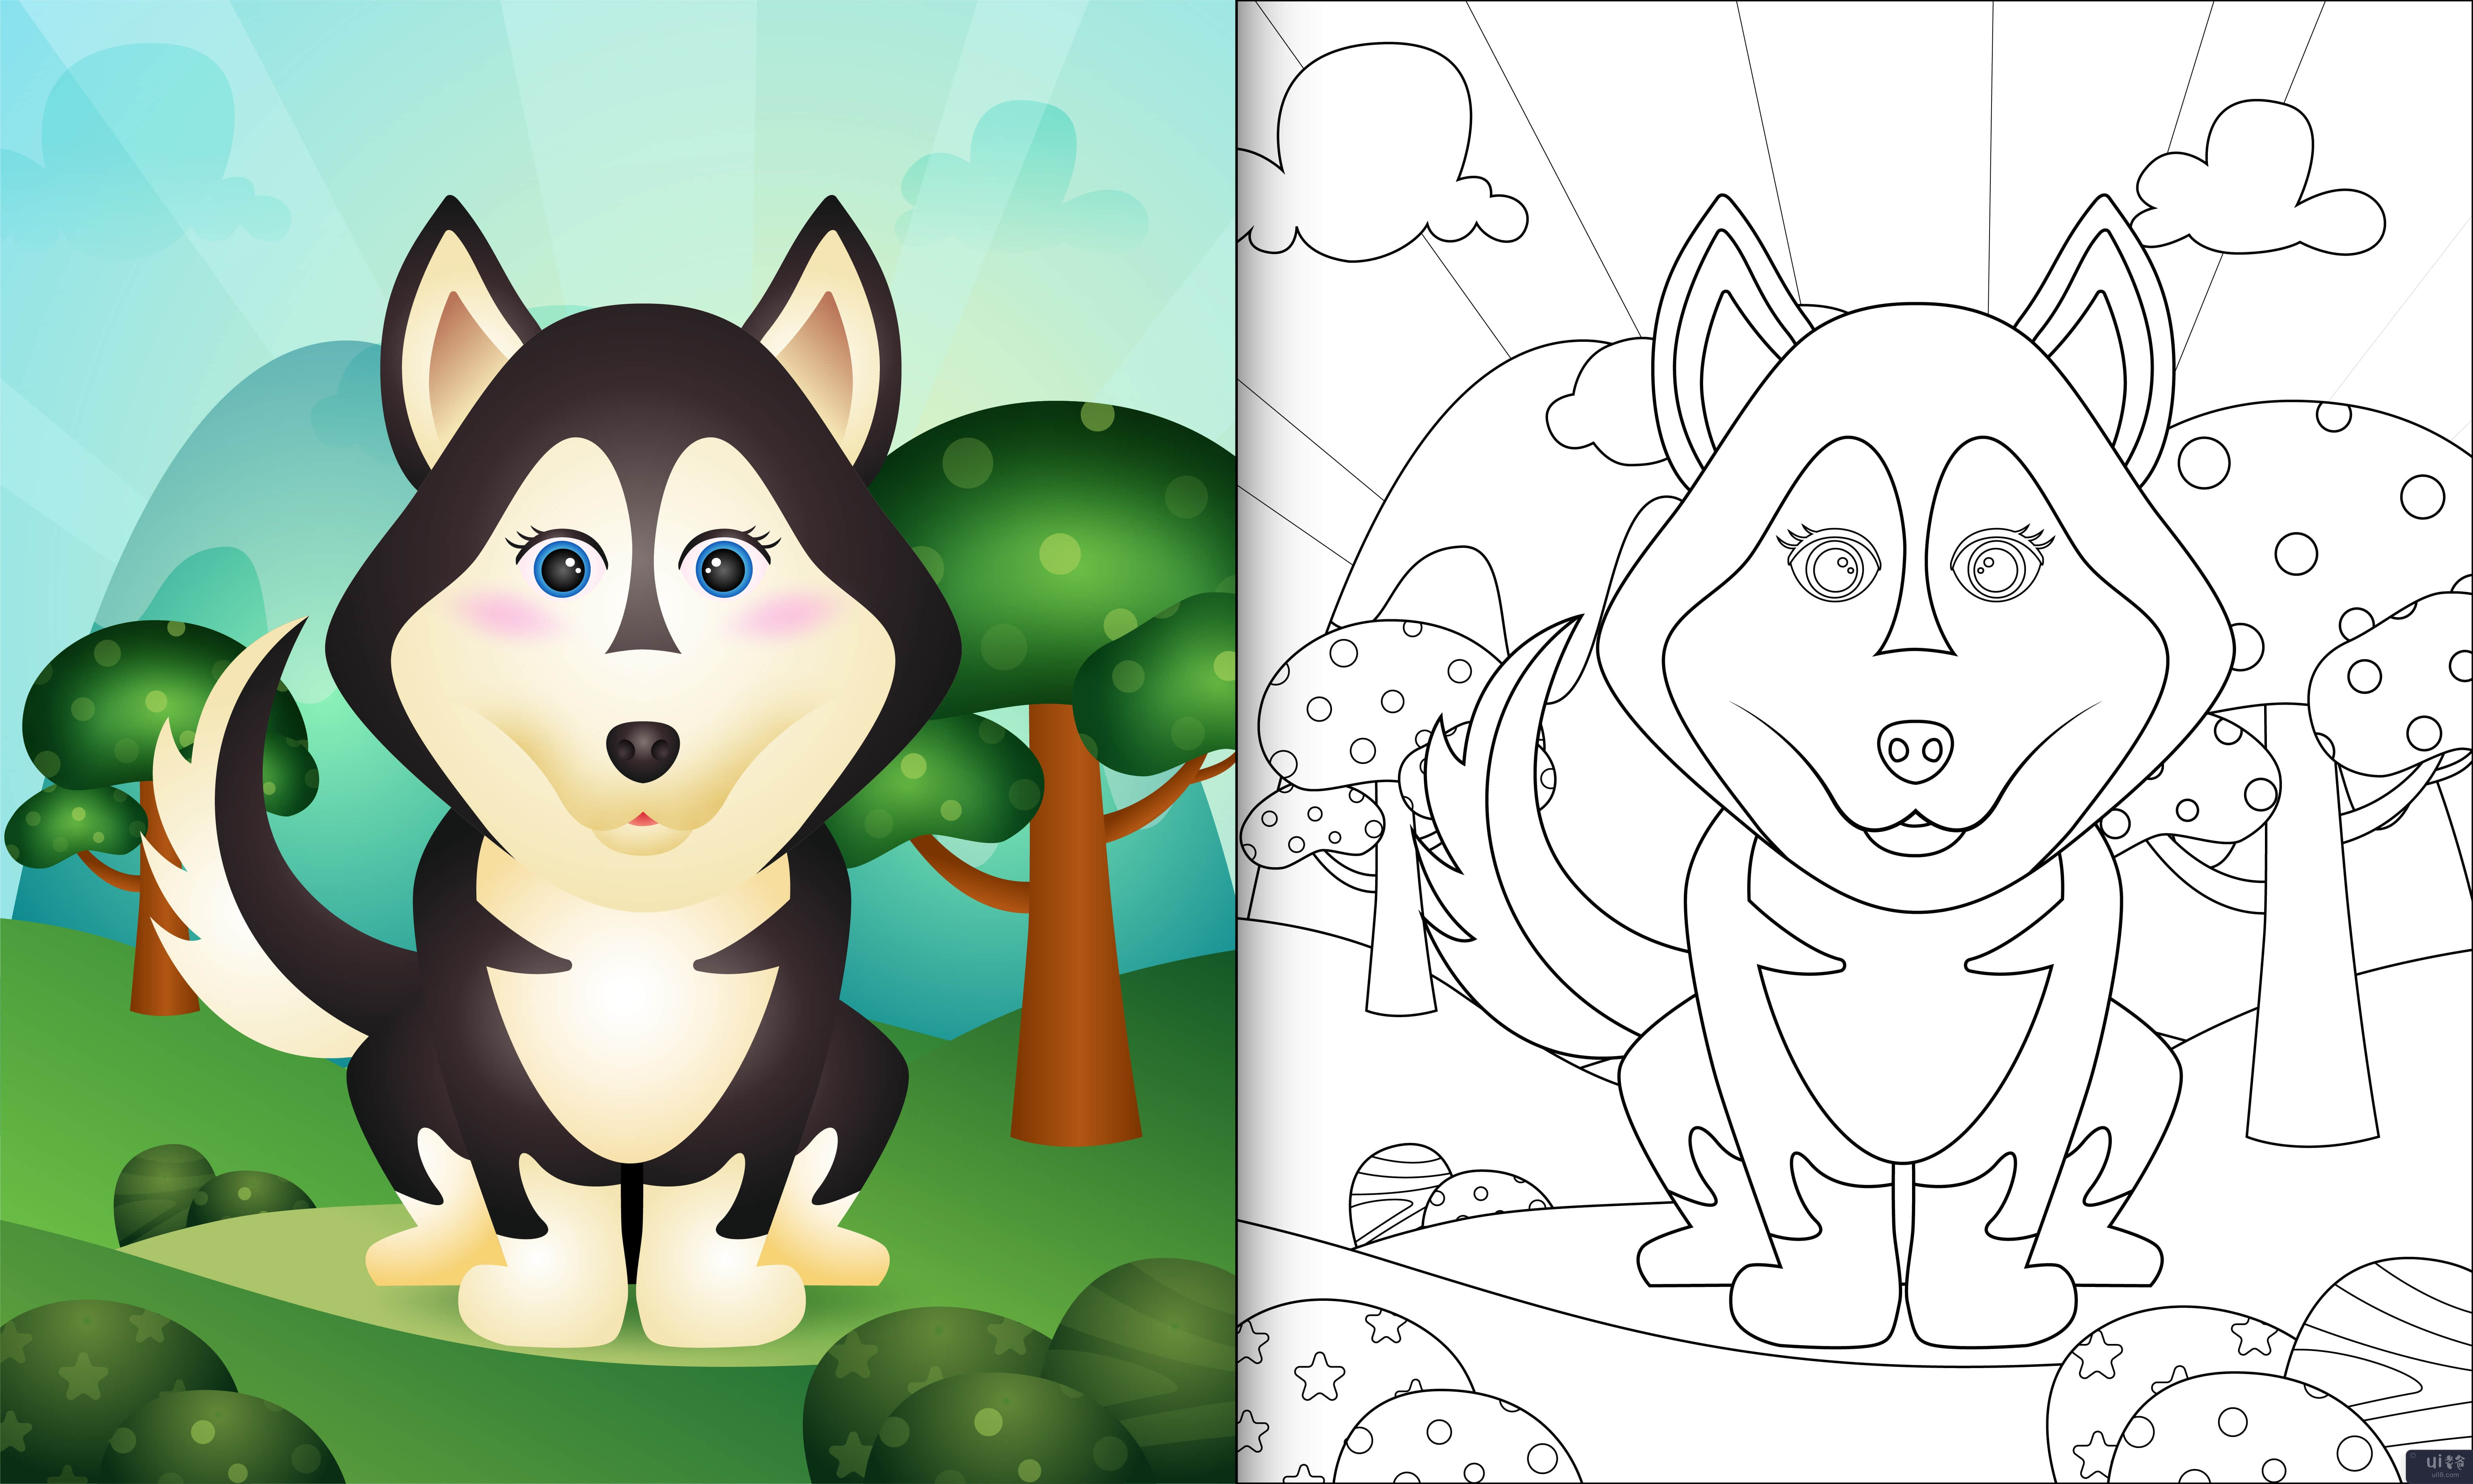 带有可爱哈士奇狗角色插图的儿童着色书(coloring book for kids with a cute husky dog character illustration)插图2